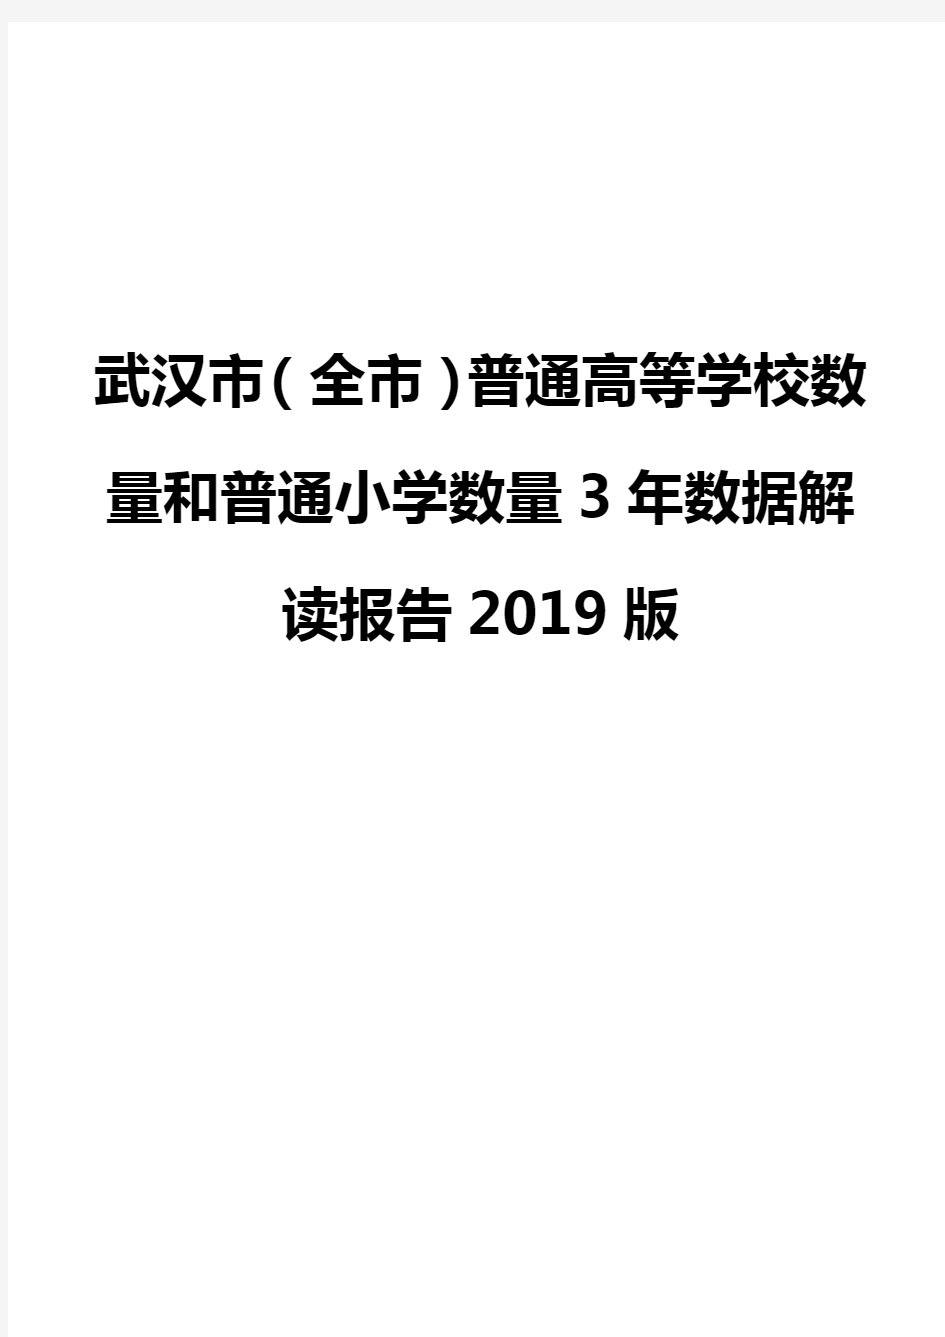 武汉市(全市)普通高等学校数量和普通小学数量3年数据解读报告2019版